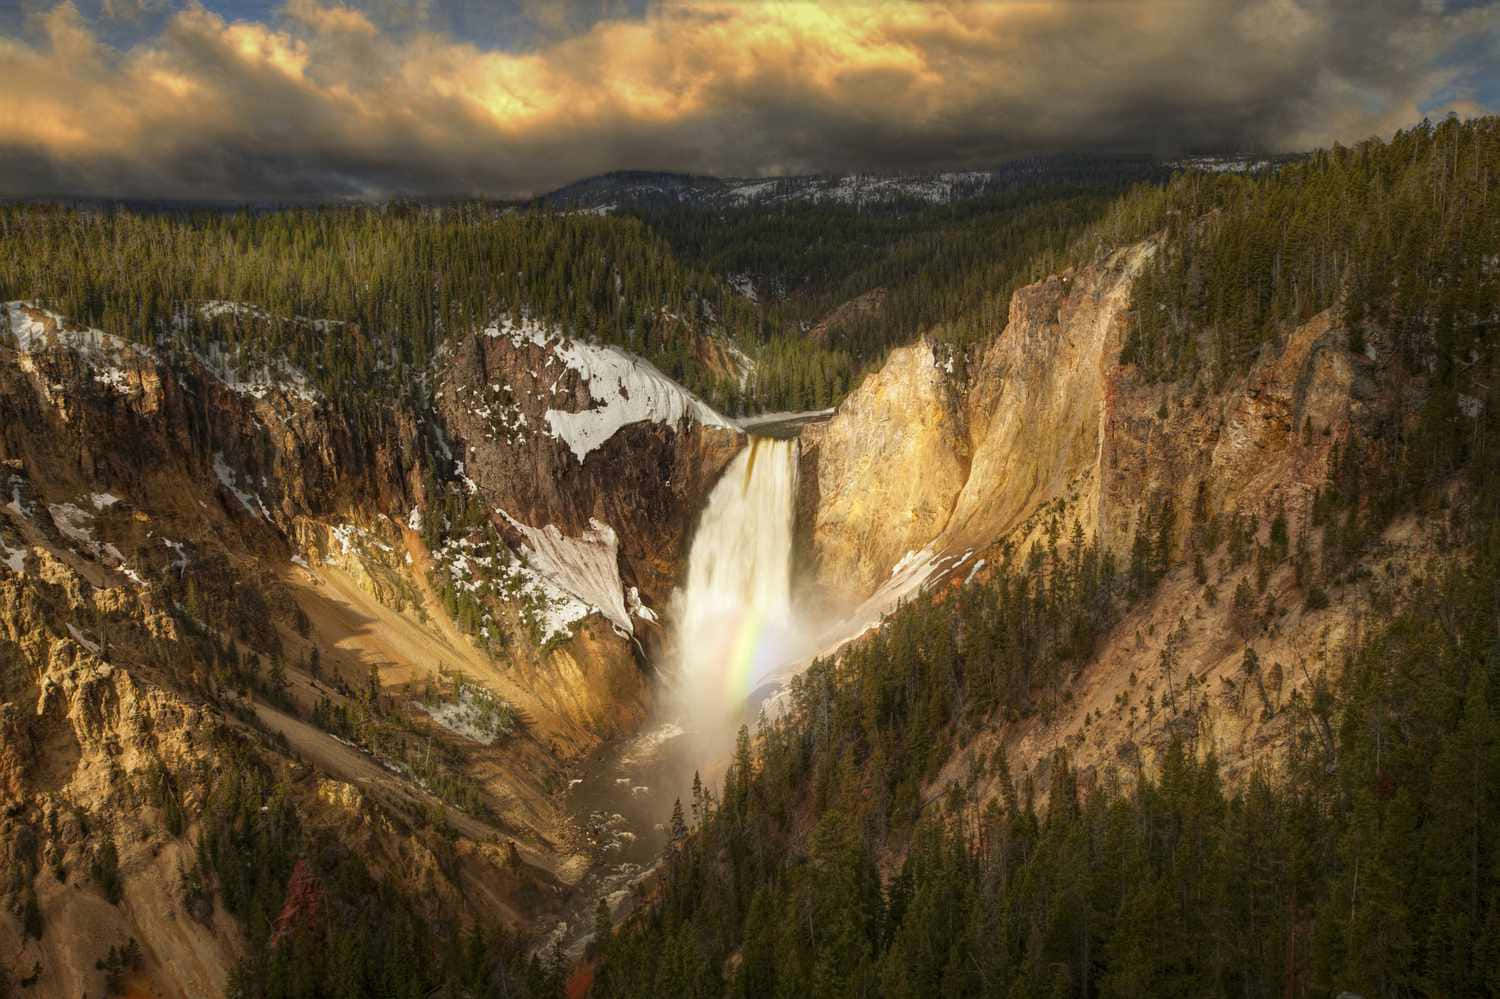 Imponentebisonte Deambulando Por Las Llanuras De Yellowstone. Fondo de pantalla